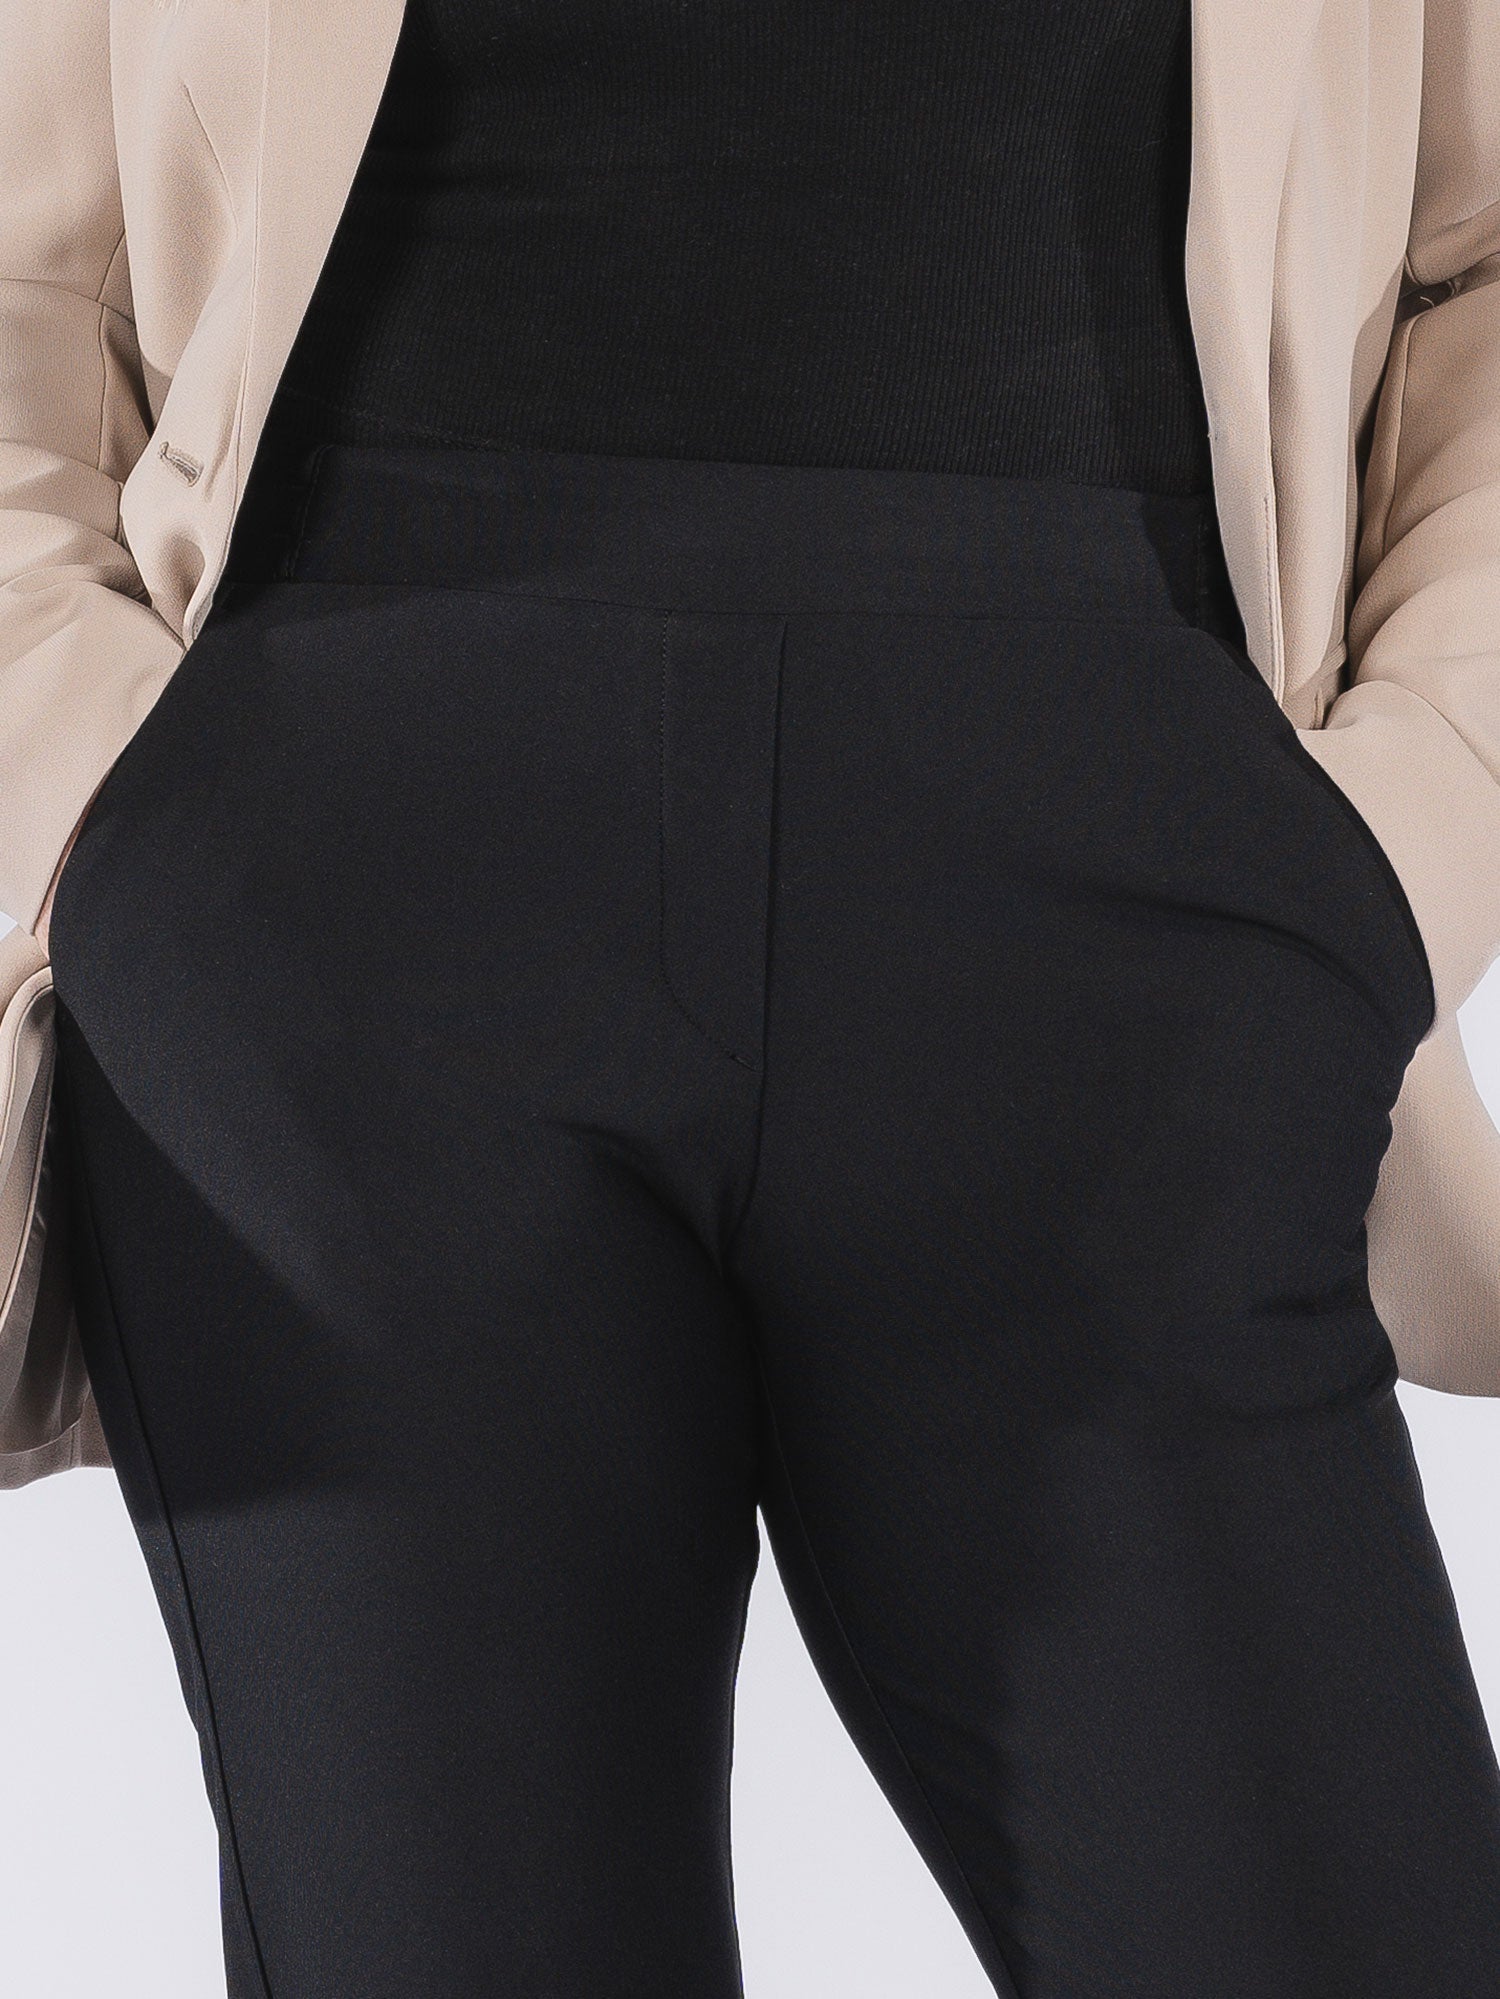 Women's Urban Pants